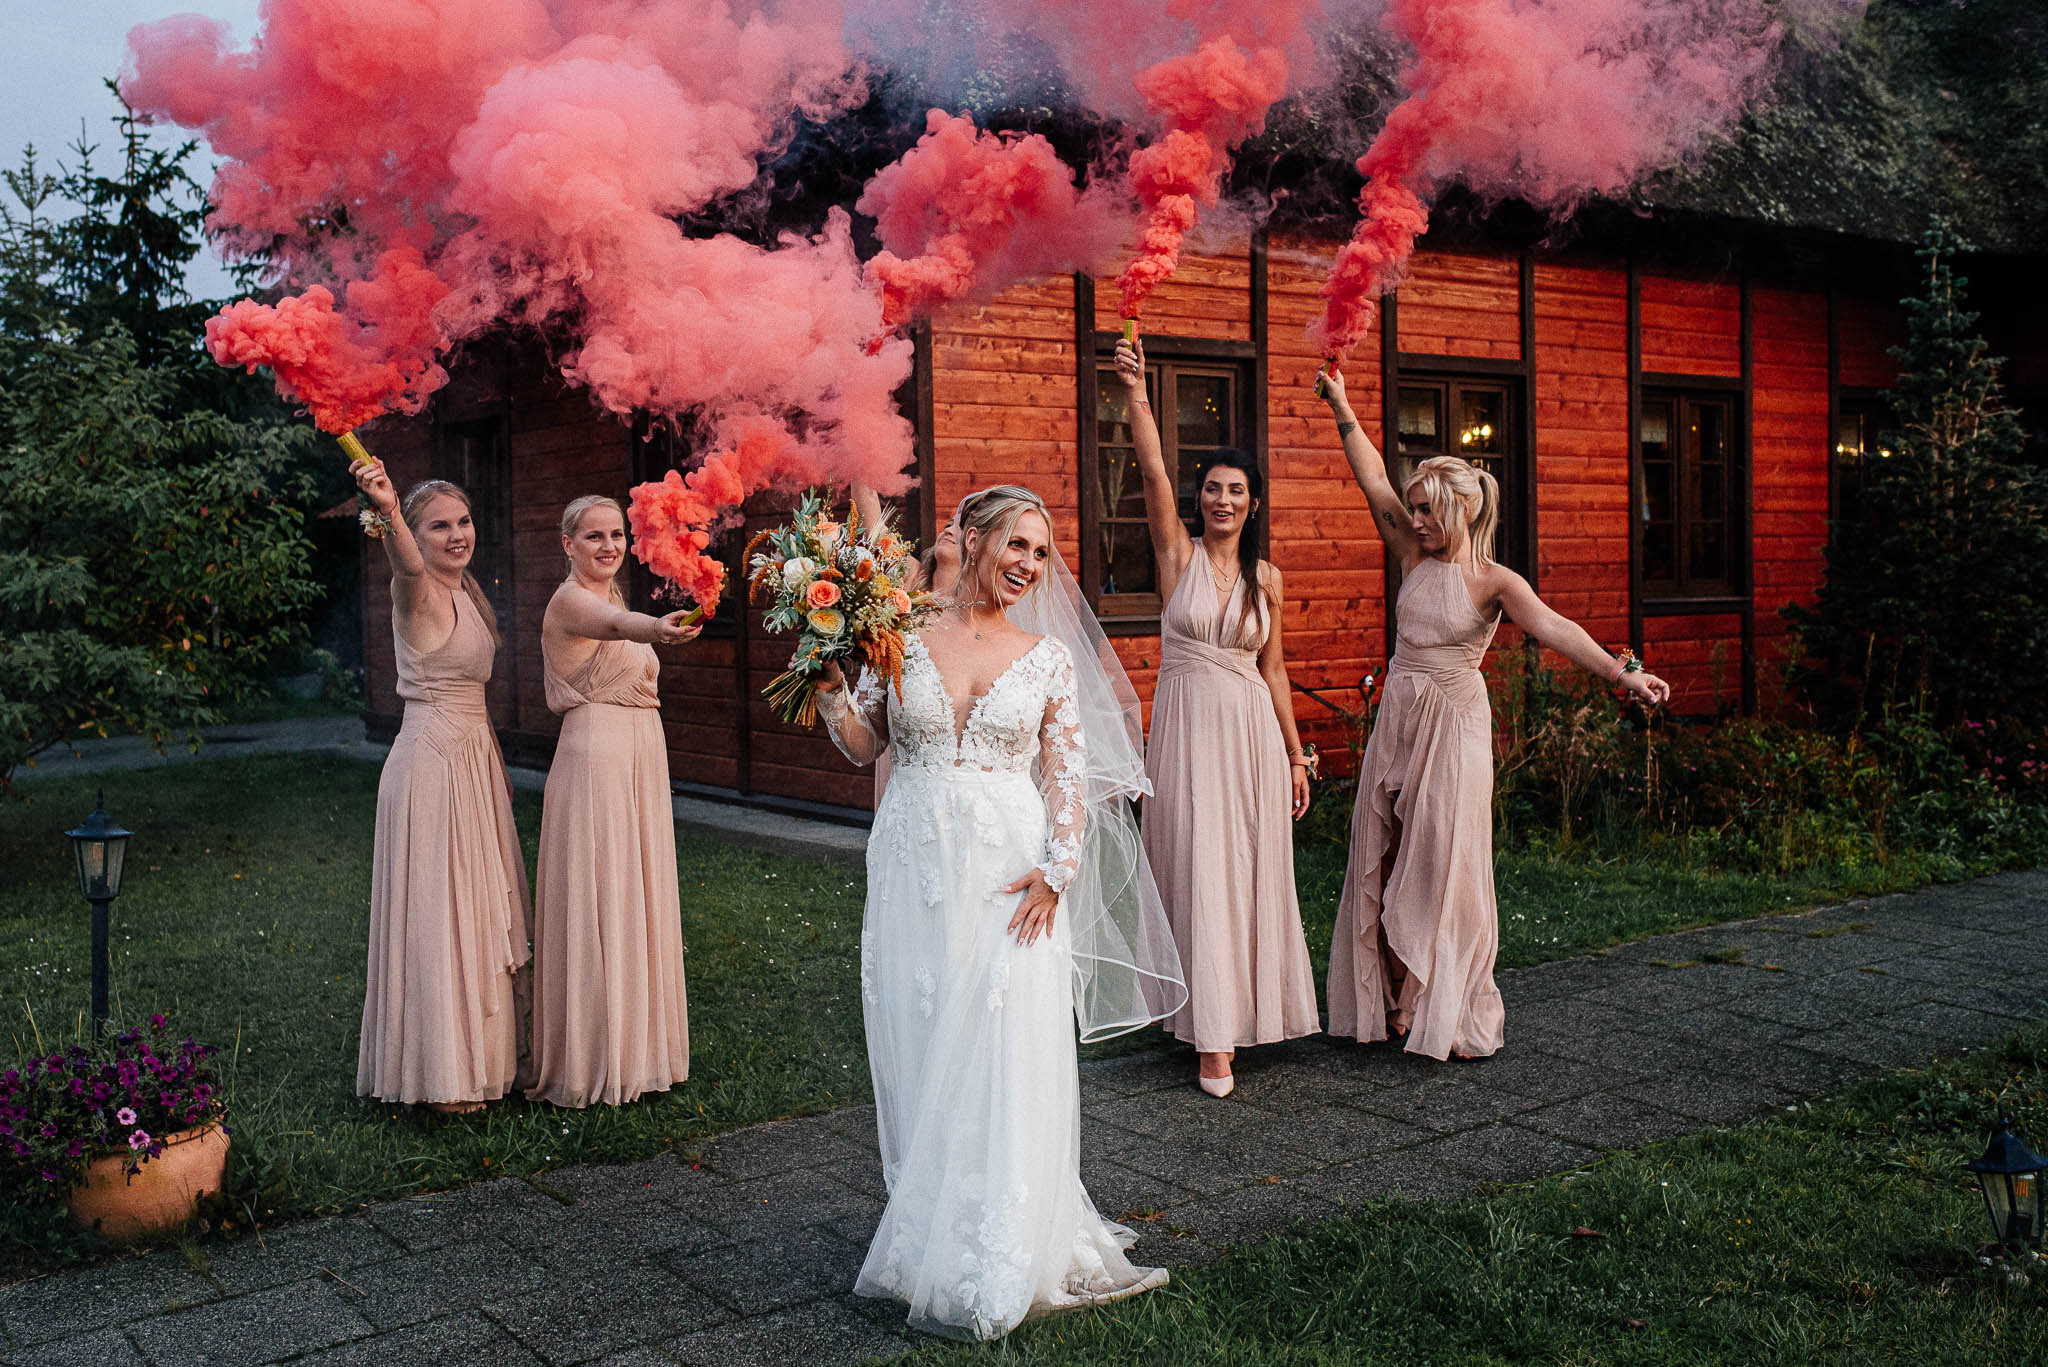 Na zdjęciu widzimy panią młodą w towarzystwie swoich druhen podczas sesji ślubnej z użyciem świec dymnych. W tle widać rustykalną chatę, która tworzy piękne tło dla fotografii.